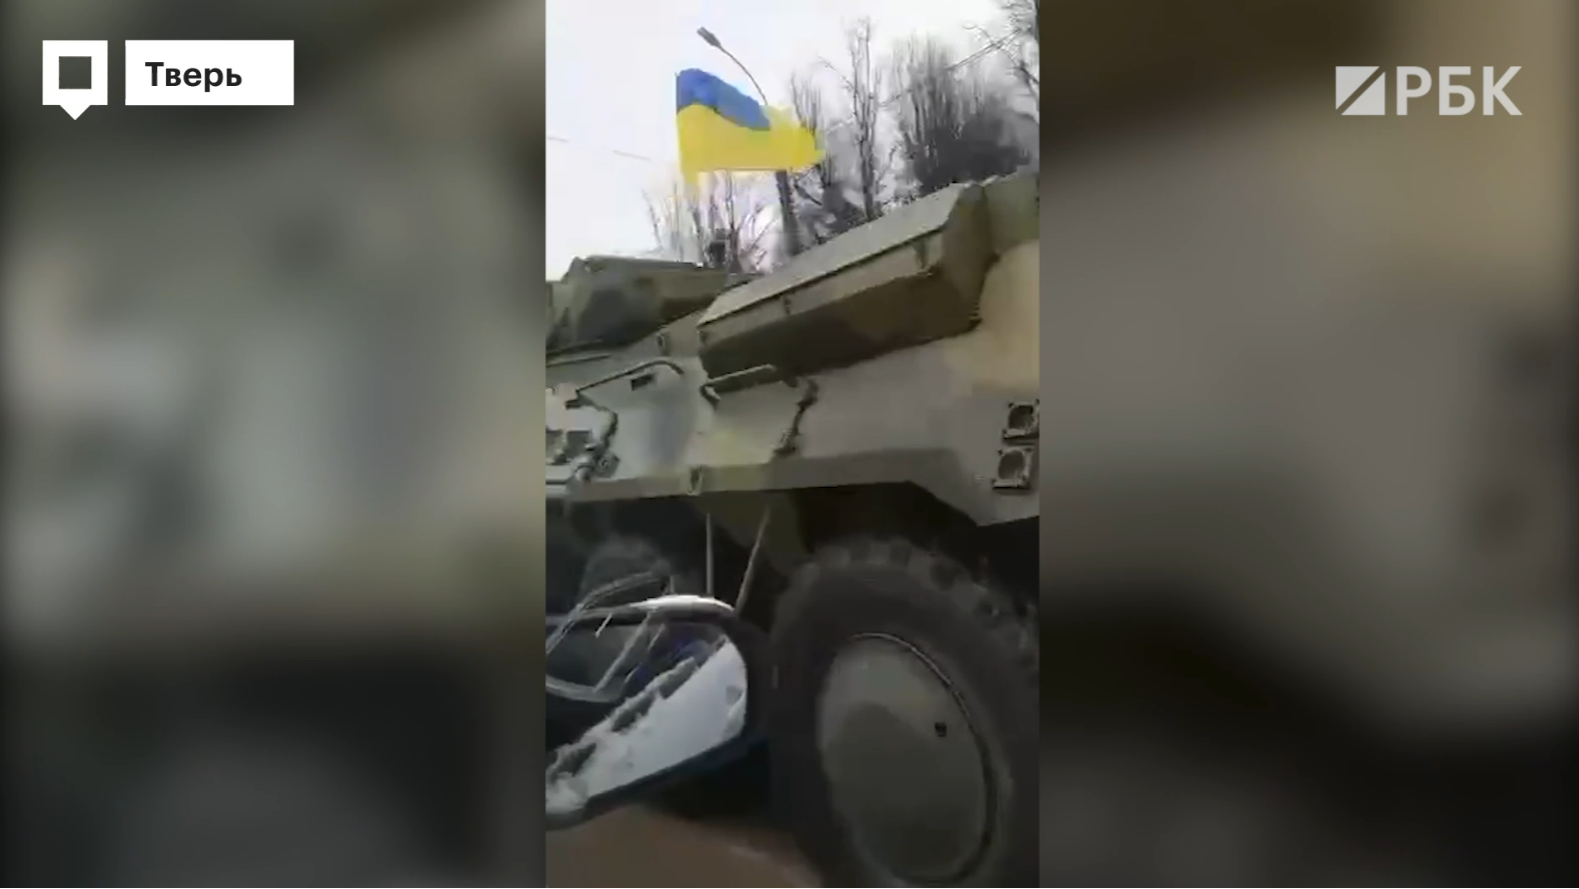 В Твери отменили съемки фильма, в котором была техника с флагами Украины